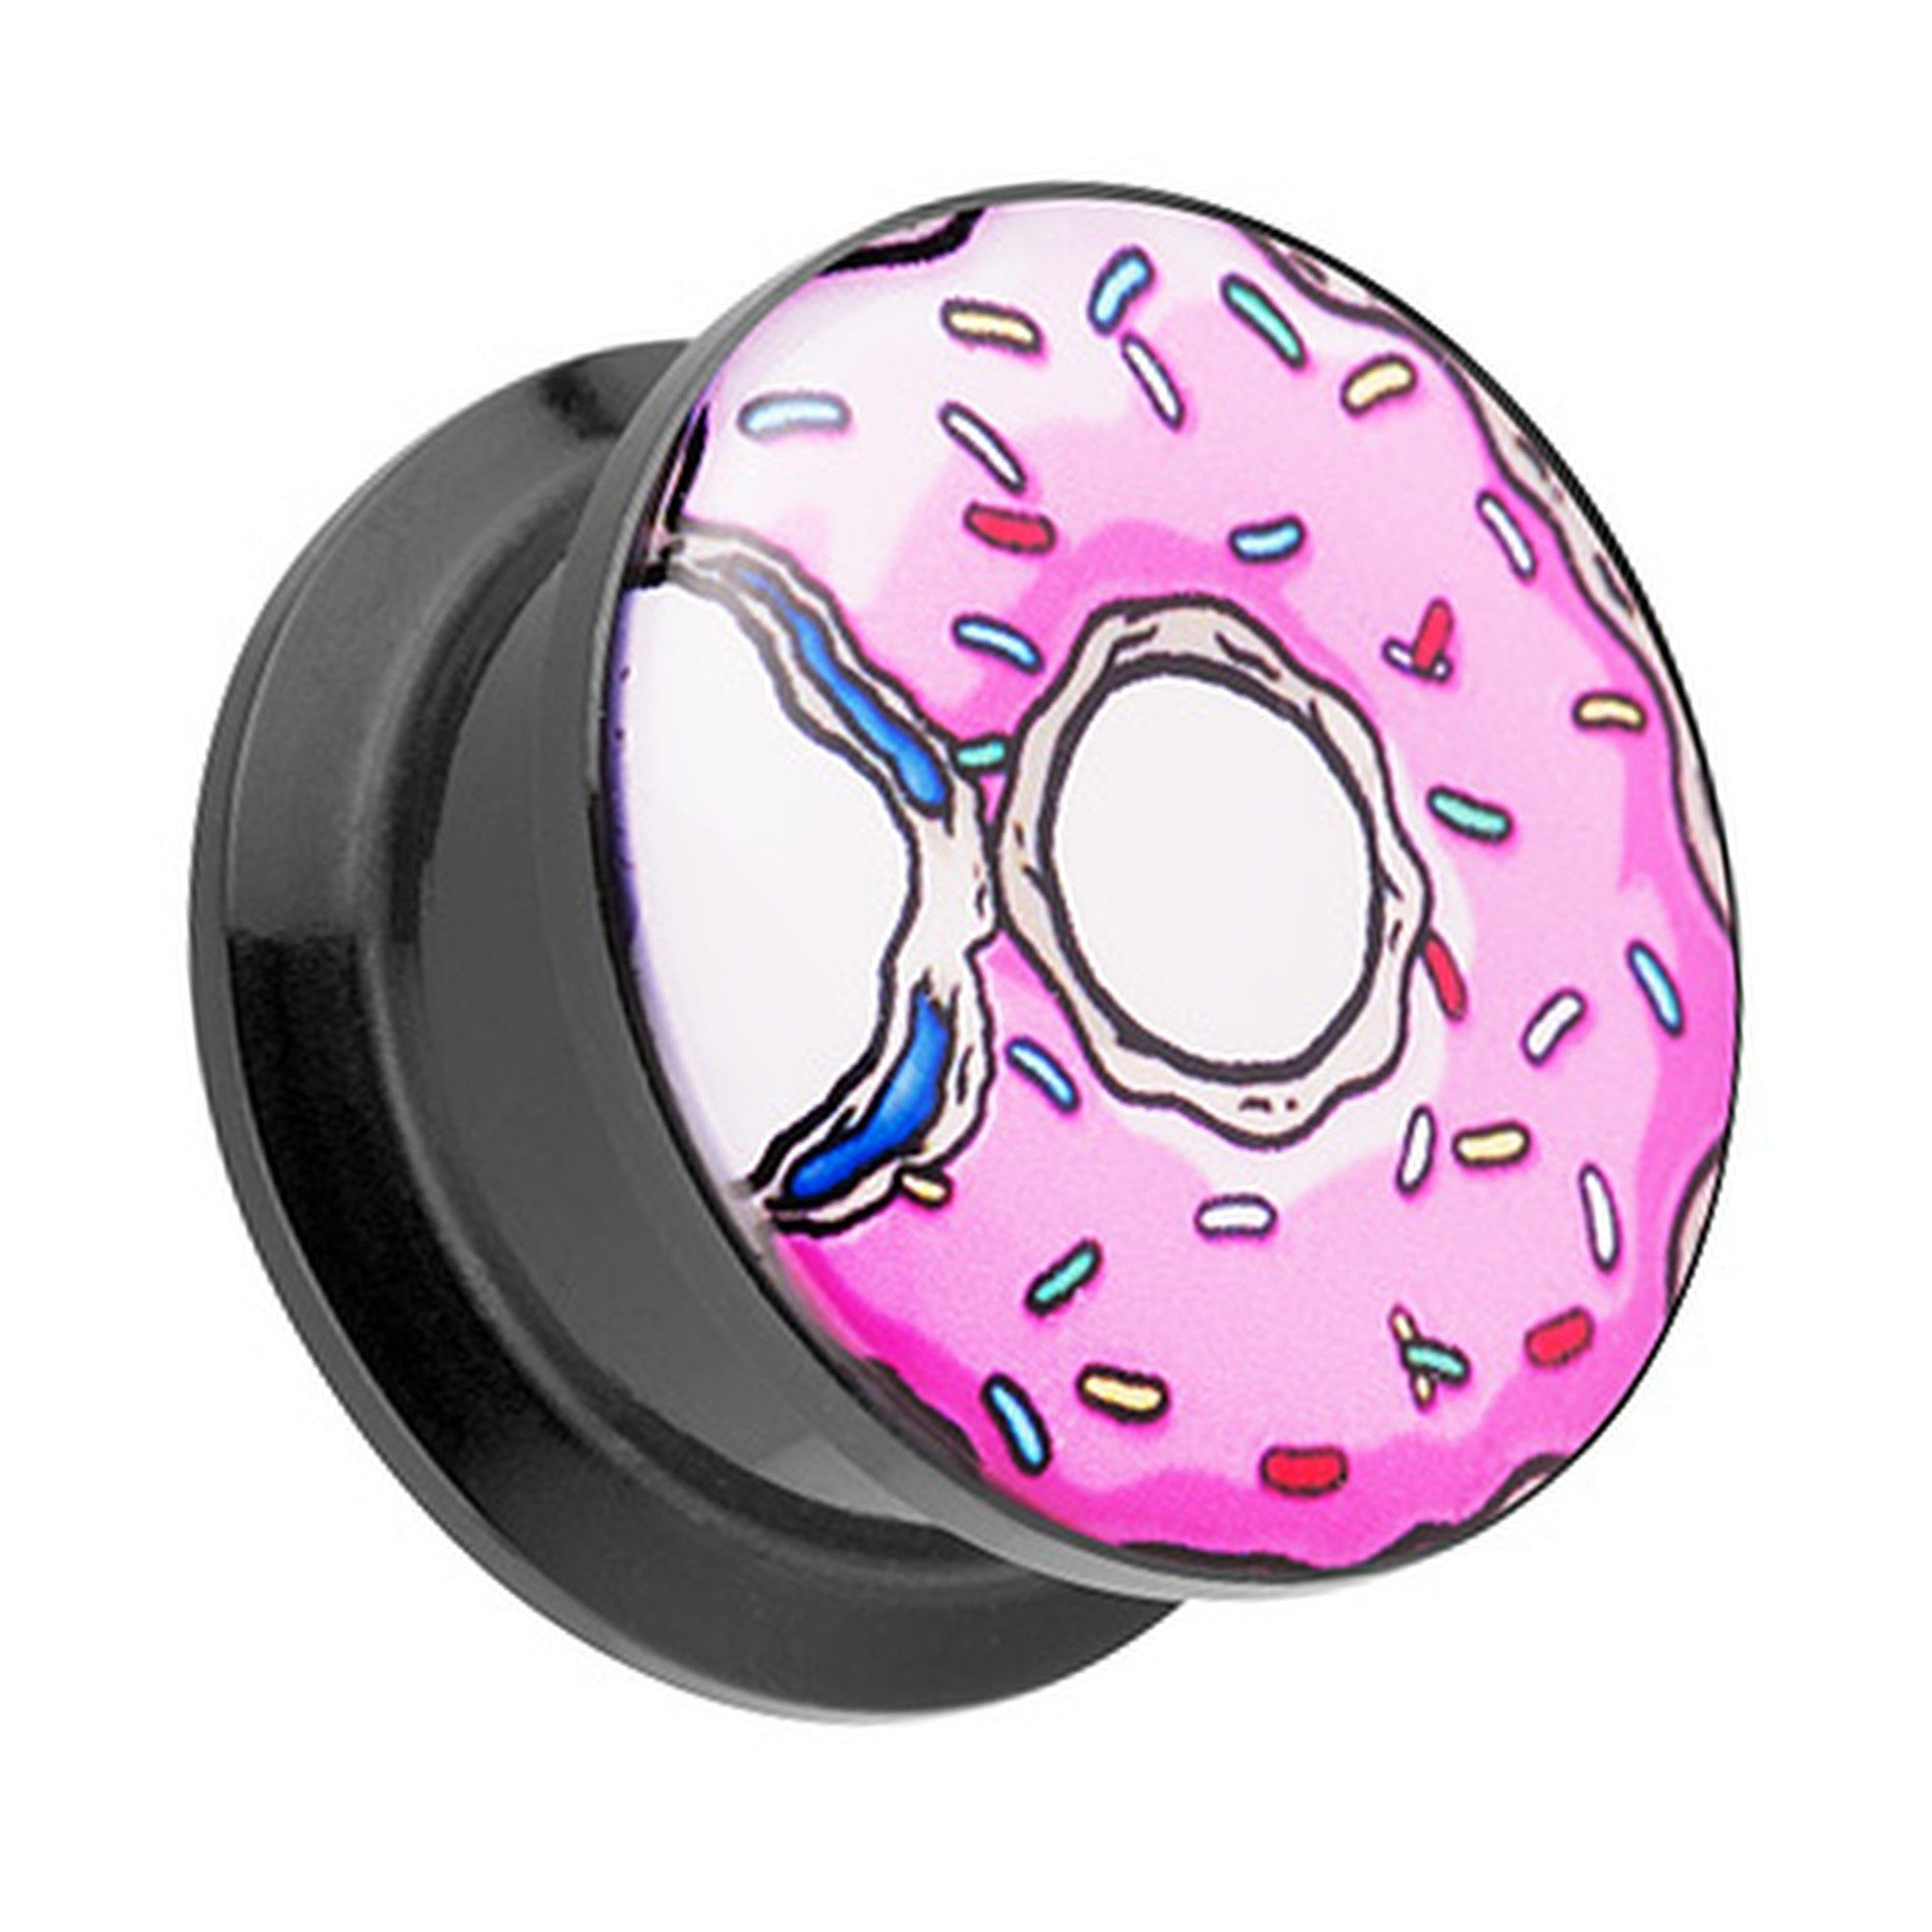 Taffstyle Plug Piercing Schraub Picture mit Donut bunten Streusel, Ohr Plug Flesh Tunnel Ohrpiercing Kunststoff Schraubverschluß Picture